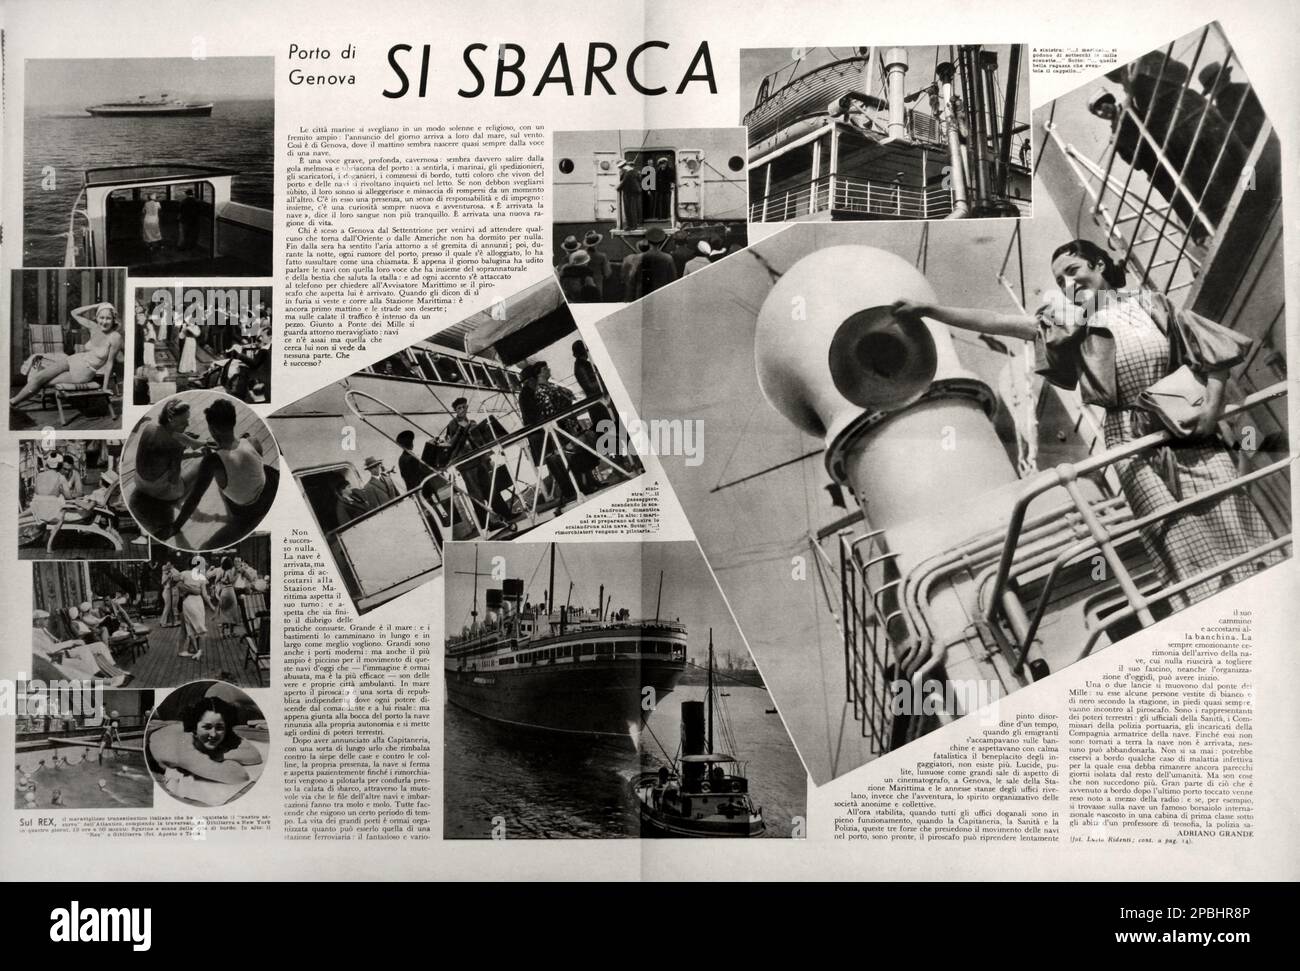 1933 , agosto , ITALIA : REX ocean liner en la revista ilustrada italiana IL SECOLO XX . Las SS Rex fue un transatlántico italiano de 51.100 toneladas que fue lanzado en 1931. Tuvo la riband azul en dirección oeste entre 1933 y 1935. El Rex fue presentado en la película de Fellini AMARCORD ( 1973 ) - TRANSATLANTICO - Nave - barco - navegazione - mar - mare - ITALIA - TURISTI - TURISTI - TURISMO - TURISMO - TURISMO - TURISMO - FOTO STORICHE - HISTORIA - VACANZE - VIAJE - VACACIONES - CROCIERA --- -- Archivio GBB Foto de stock